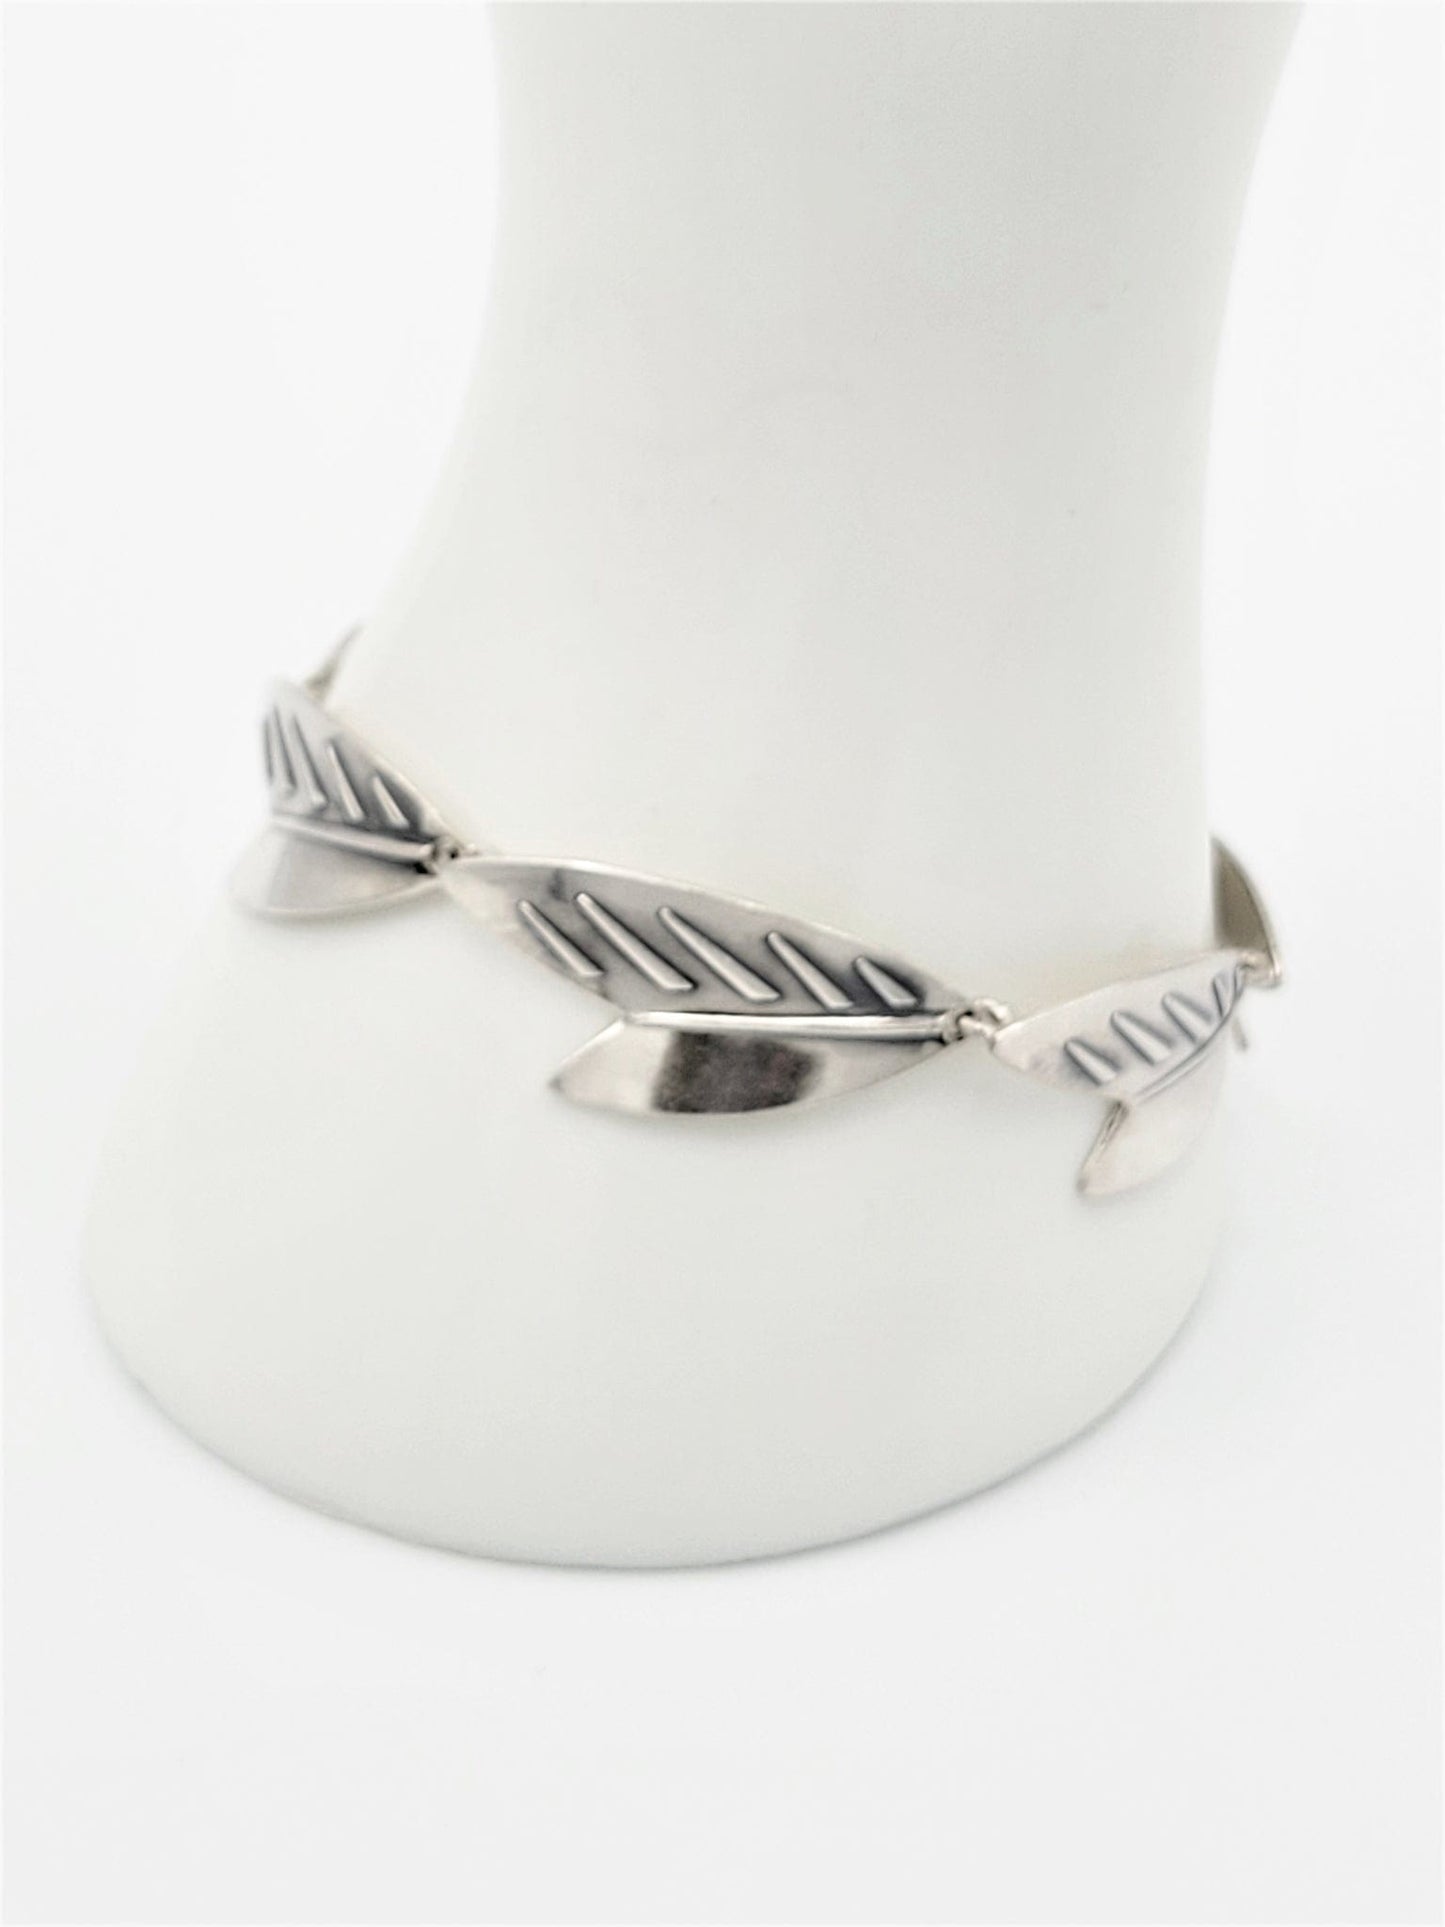 Arne Johansen Jewelry Danish Designer Arne Johansen Modernist Sterling Leaves Bracelet 1960s